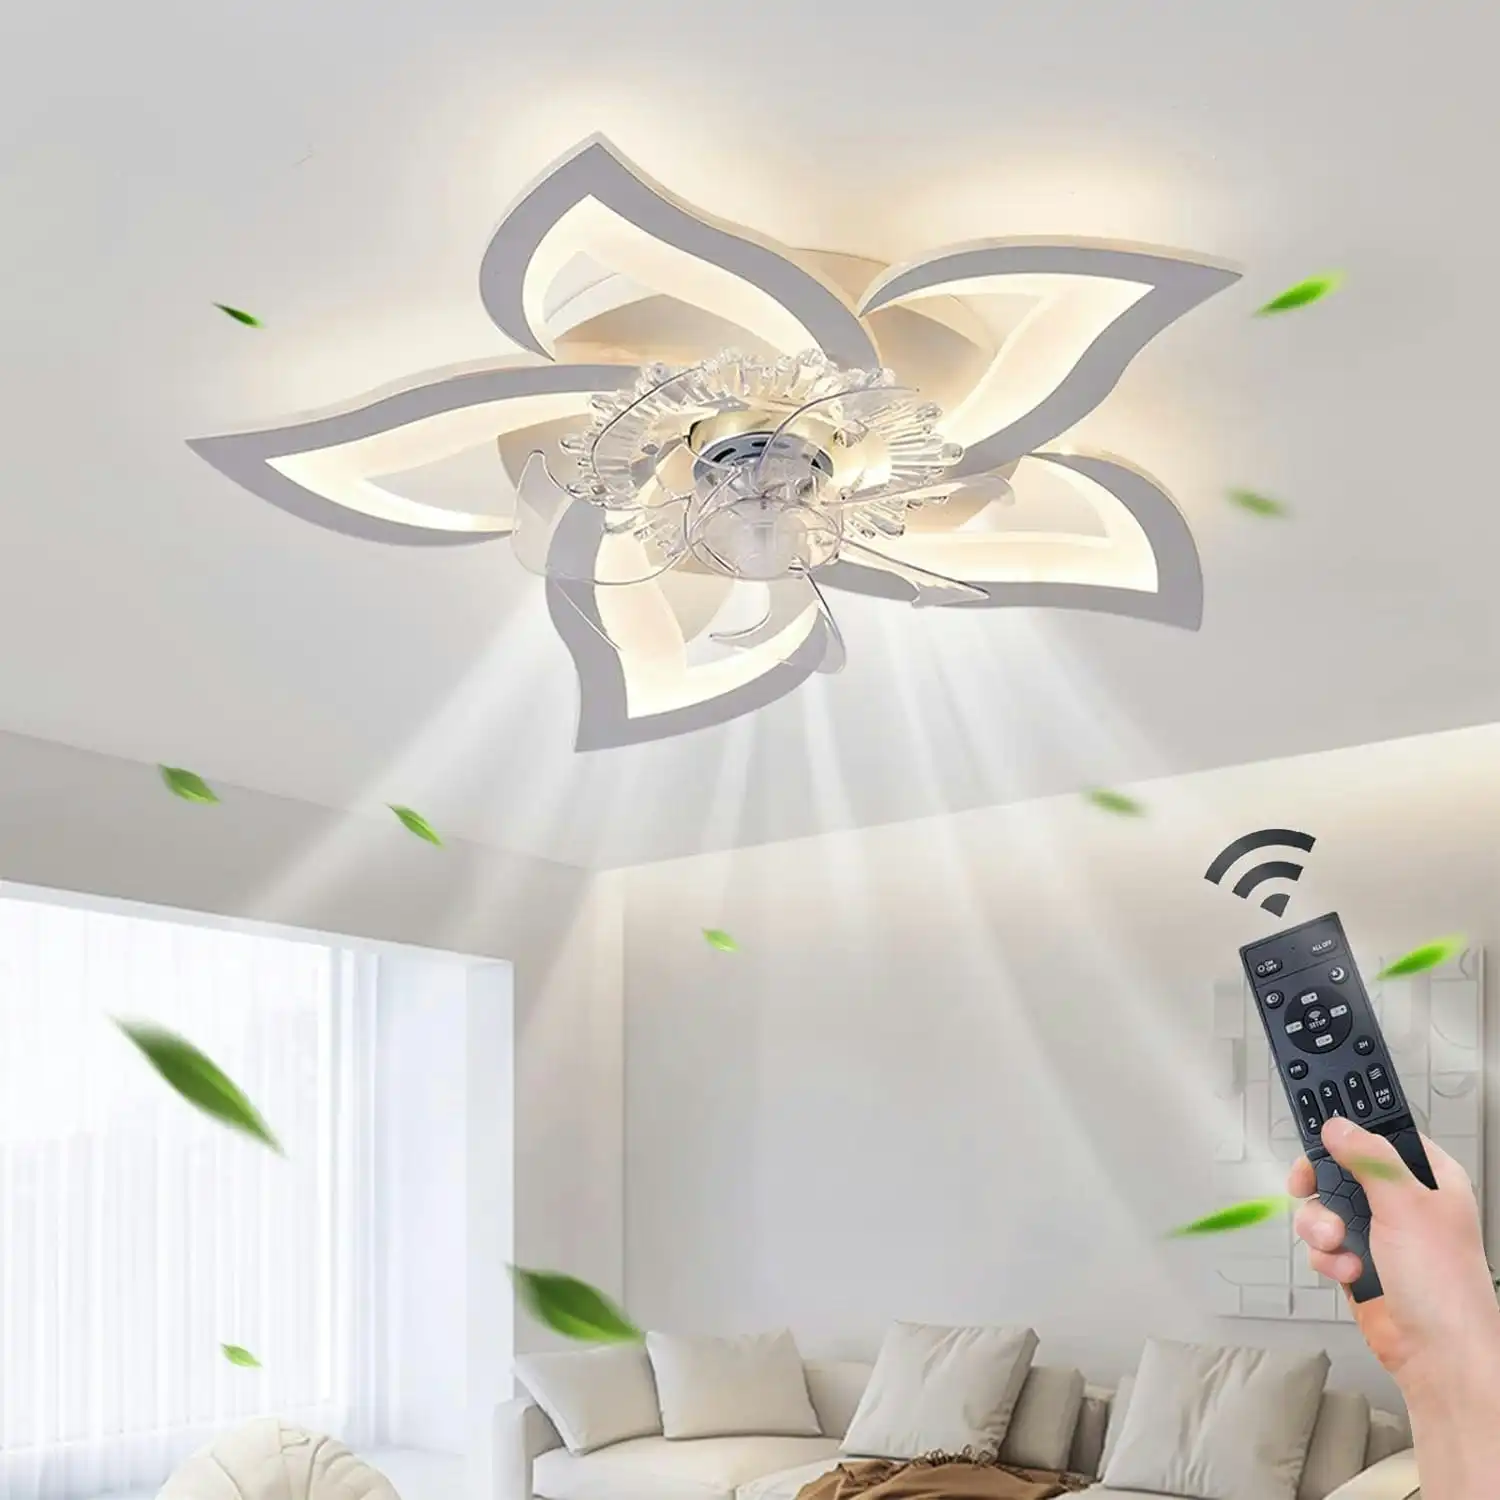 70cm Low Profile Ceiling Fans Lights Remote APP